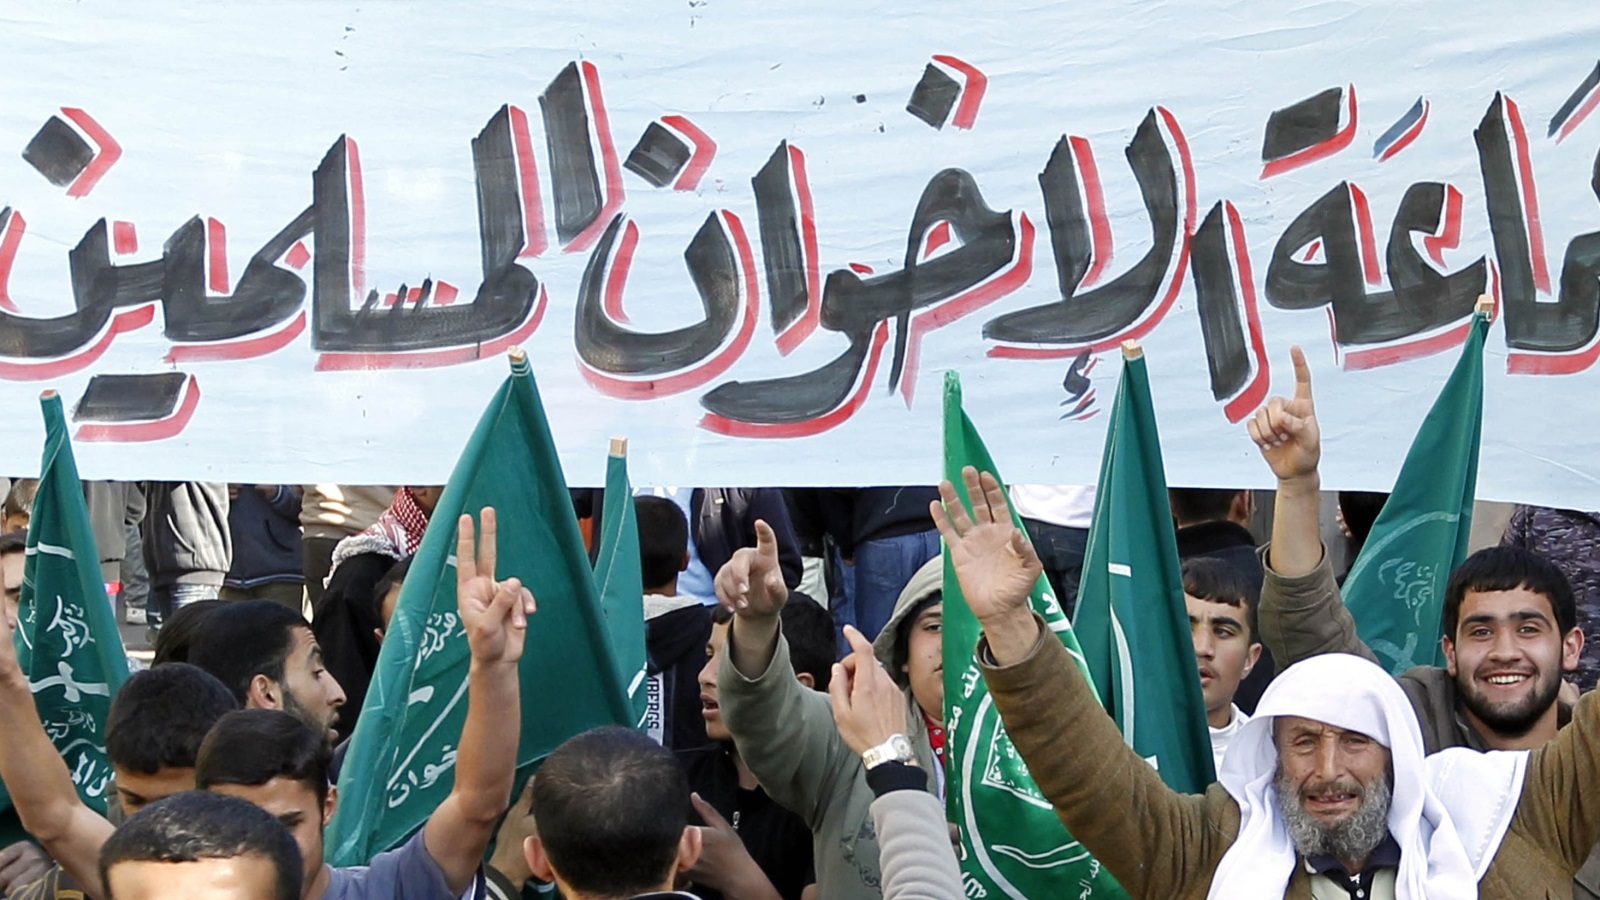 صنفت السعودية وبشكل رسمي حركة الإخوان المسلمين على أنها حركة إرهابية عام ٢٠١٤، رغم عدم اتخاذ إجراءات مباشرة ضد أفراد الحركة المقيمين على أرضها